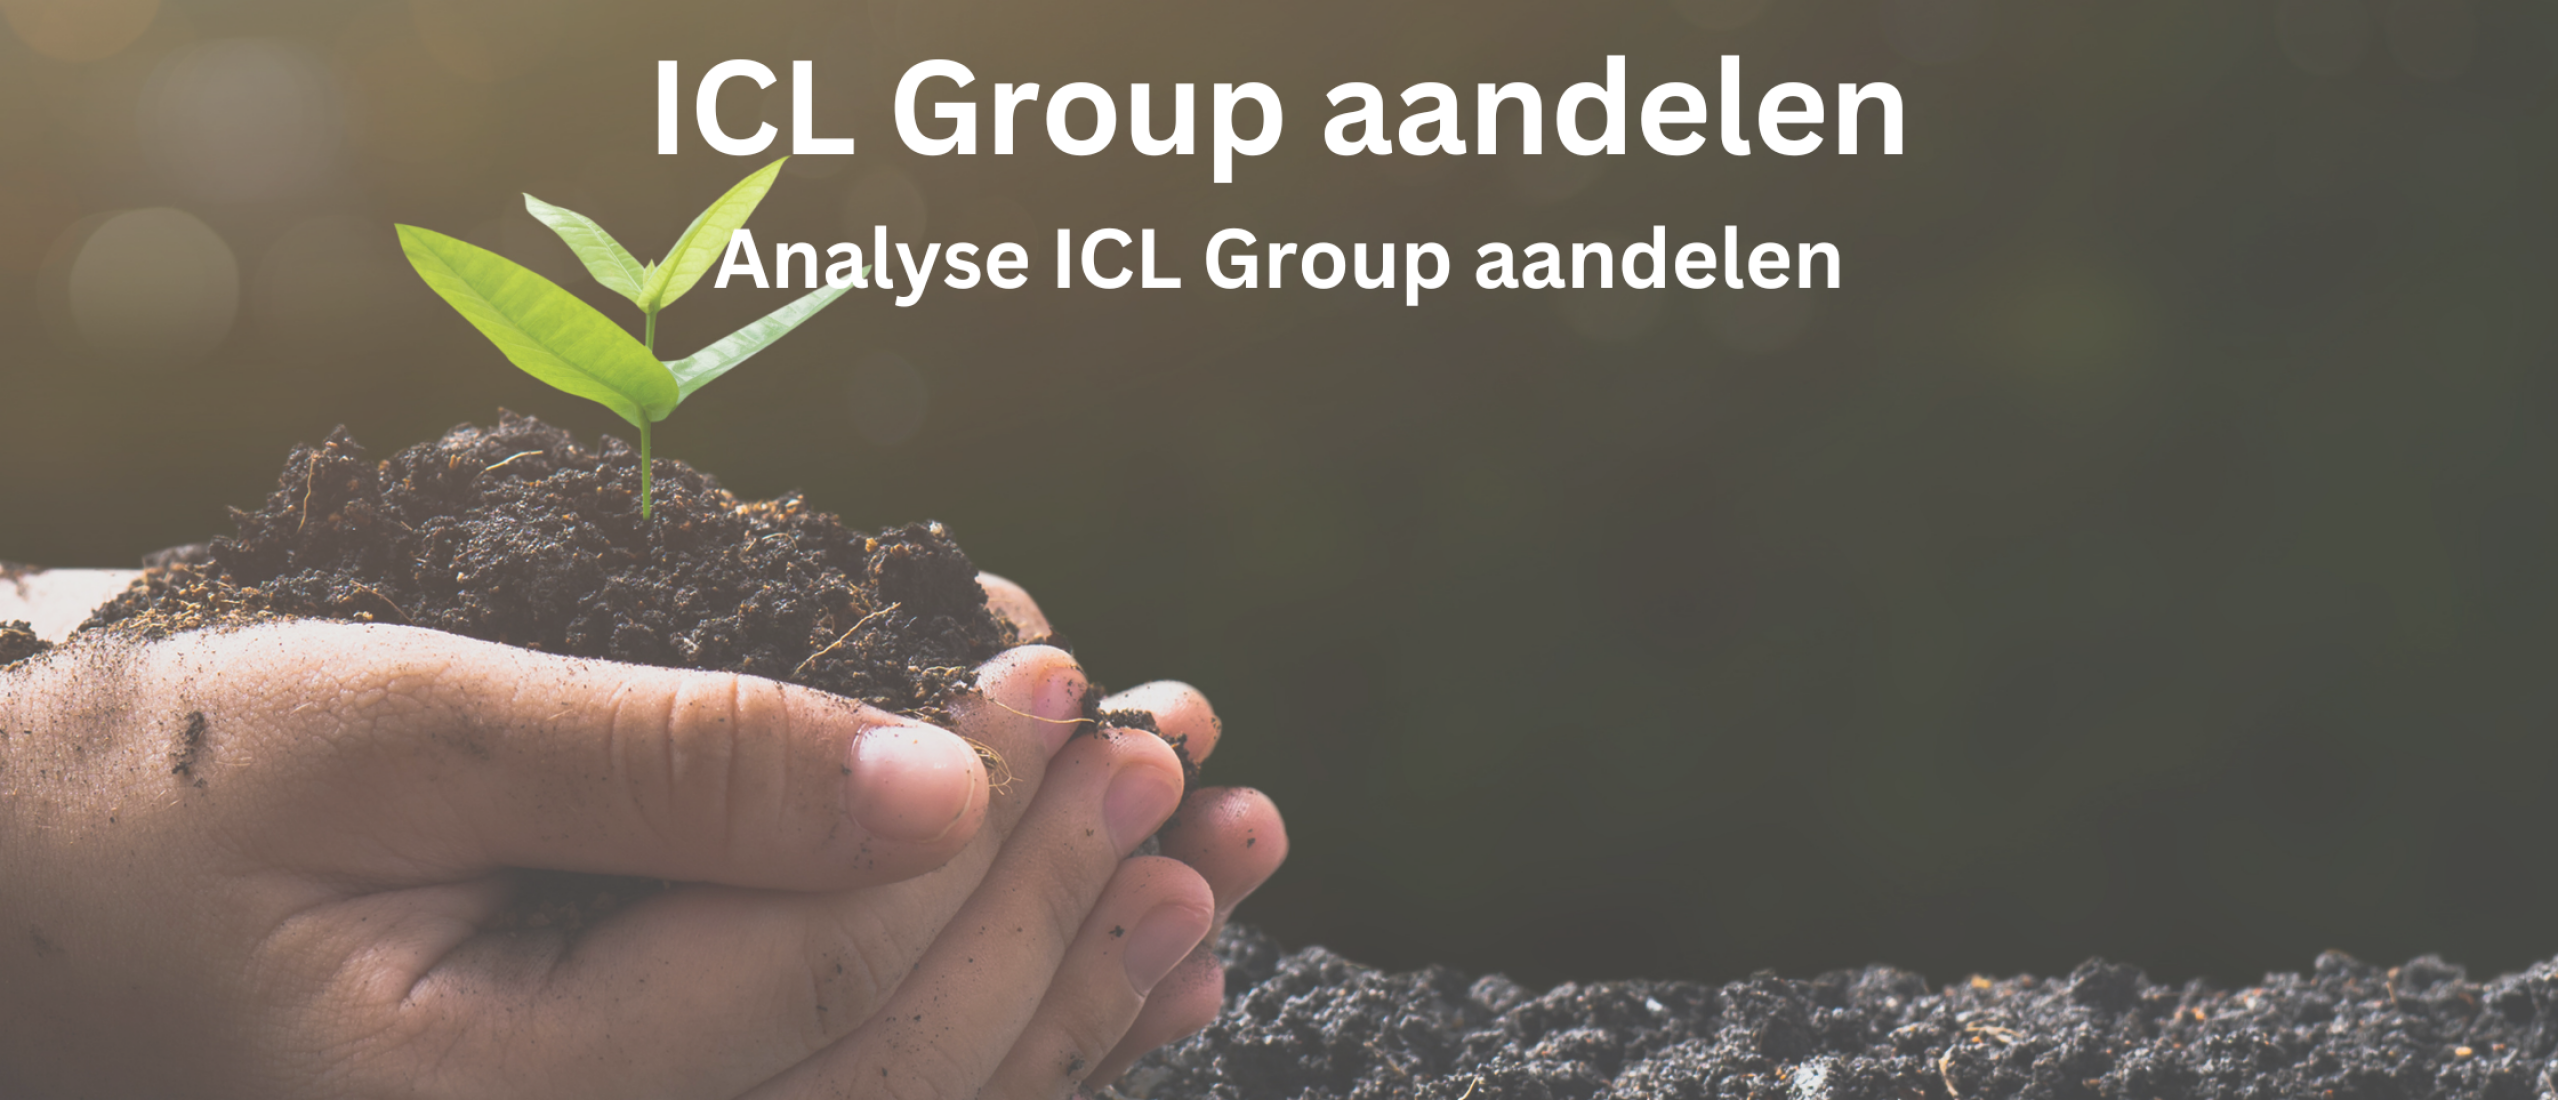 ICL Group aandelen